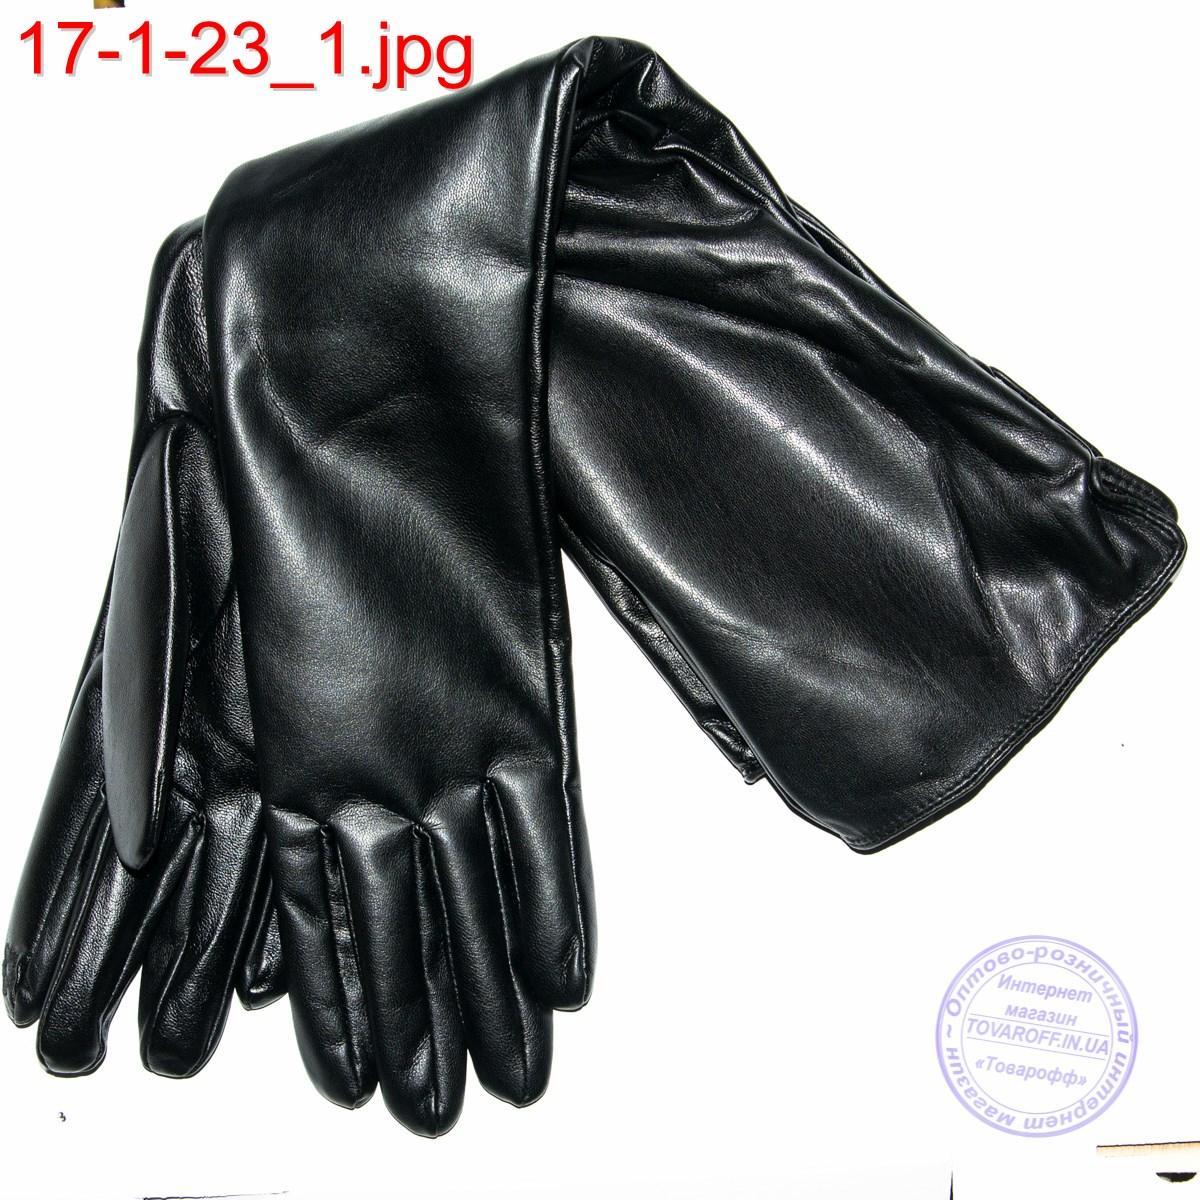 Жіночі подовжені рукавички до ліктя з еко шкіри - №17-1-23